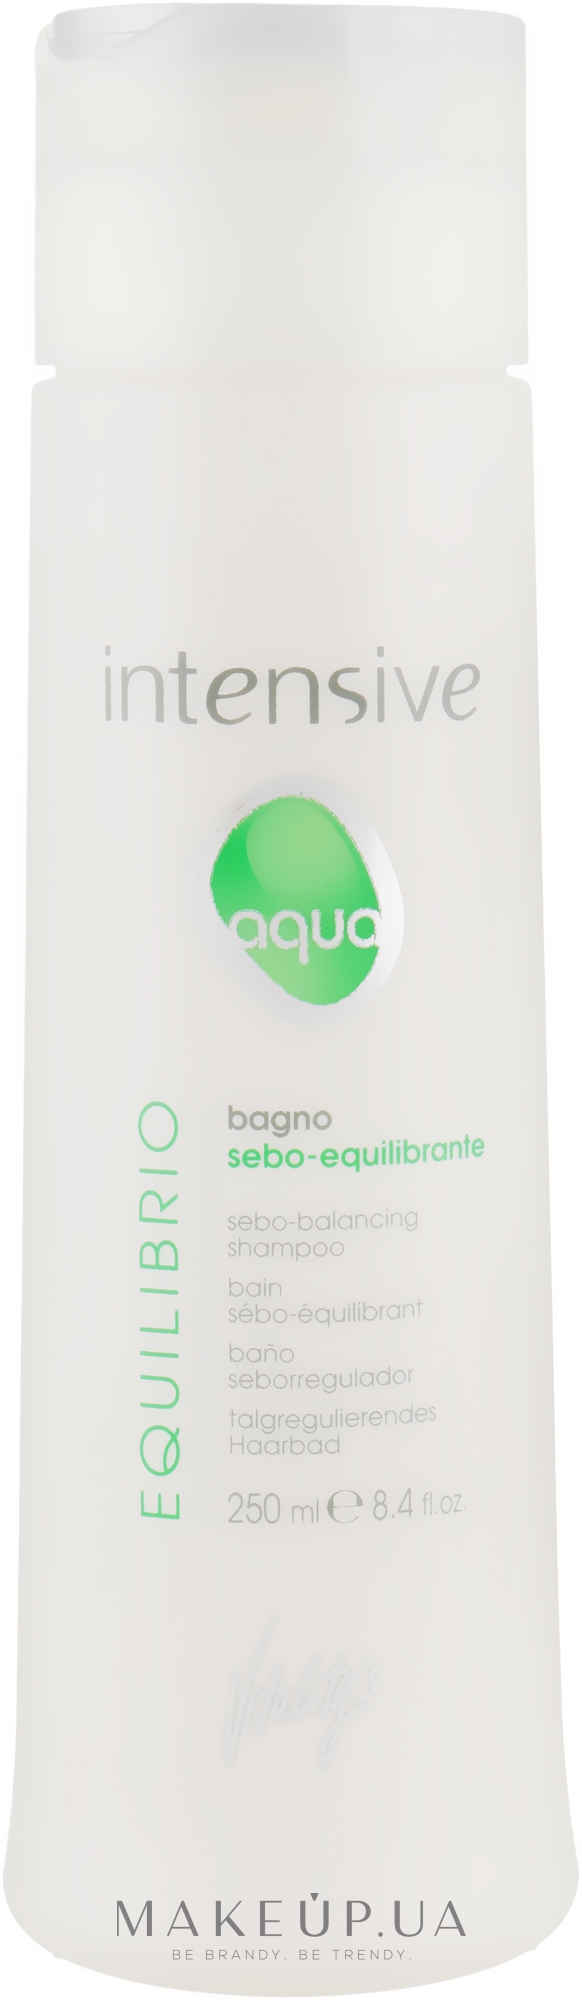 Шампунь себонормализирующий - Vitality's Intensive Aqua Equilibrio Sebo-Balancing Shampoo — фото 250ml